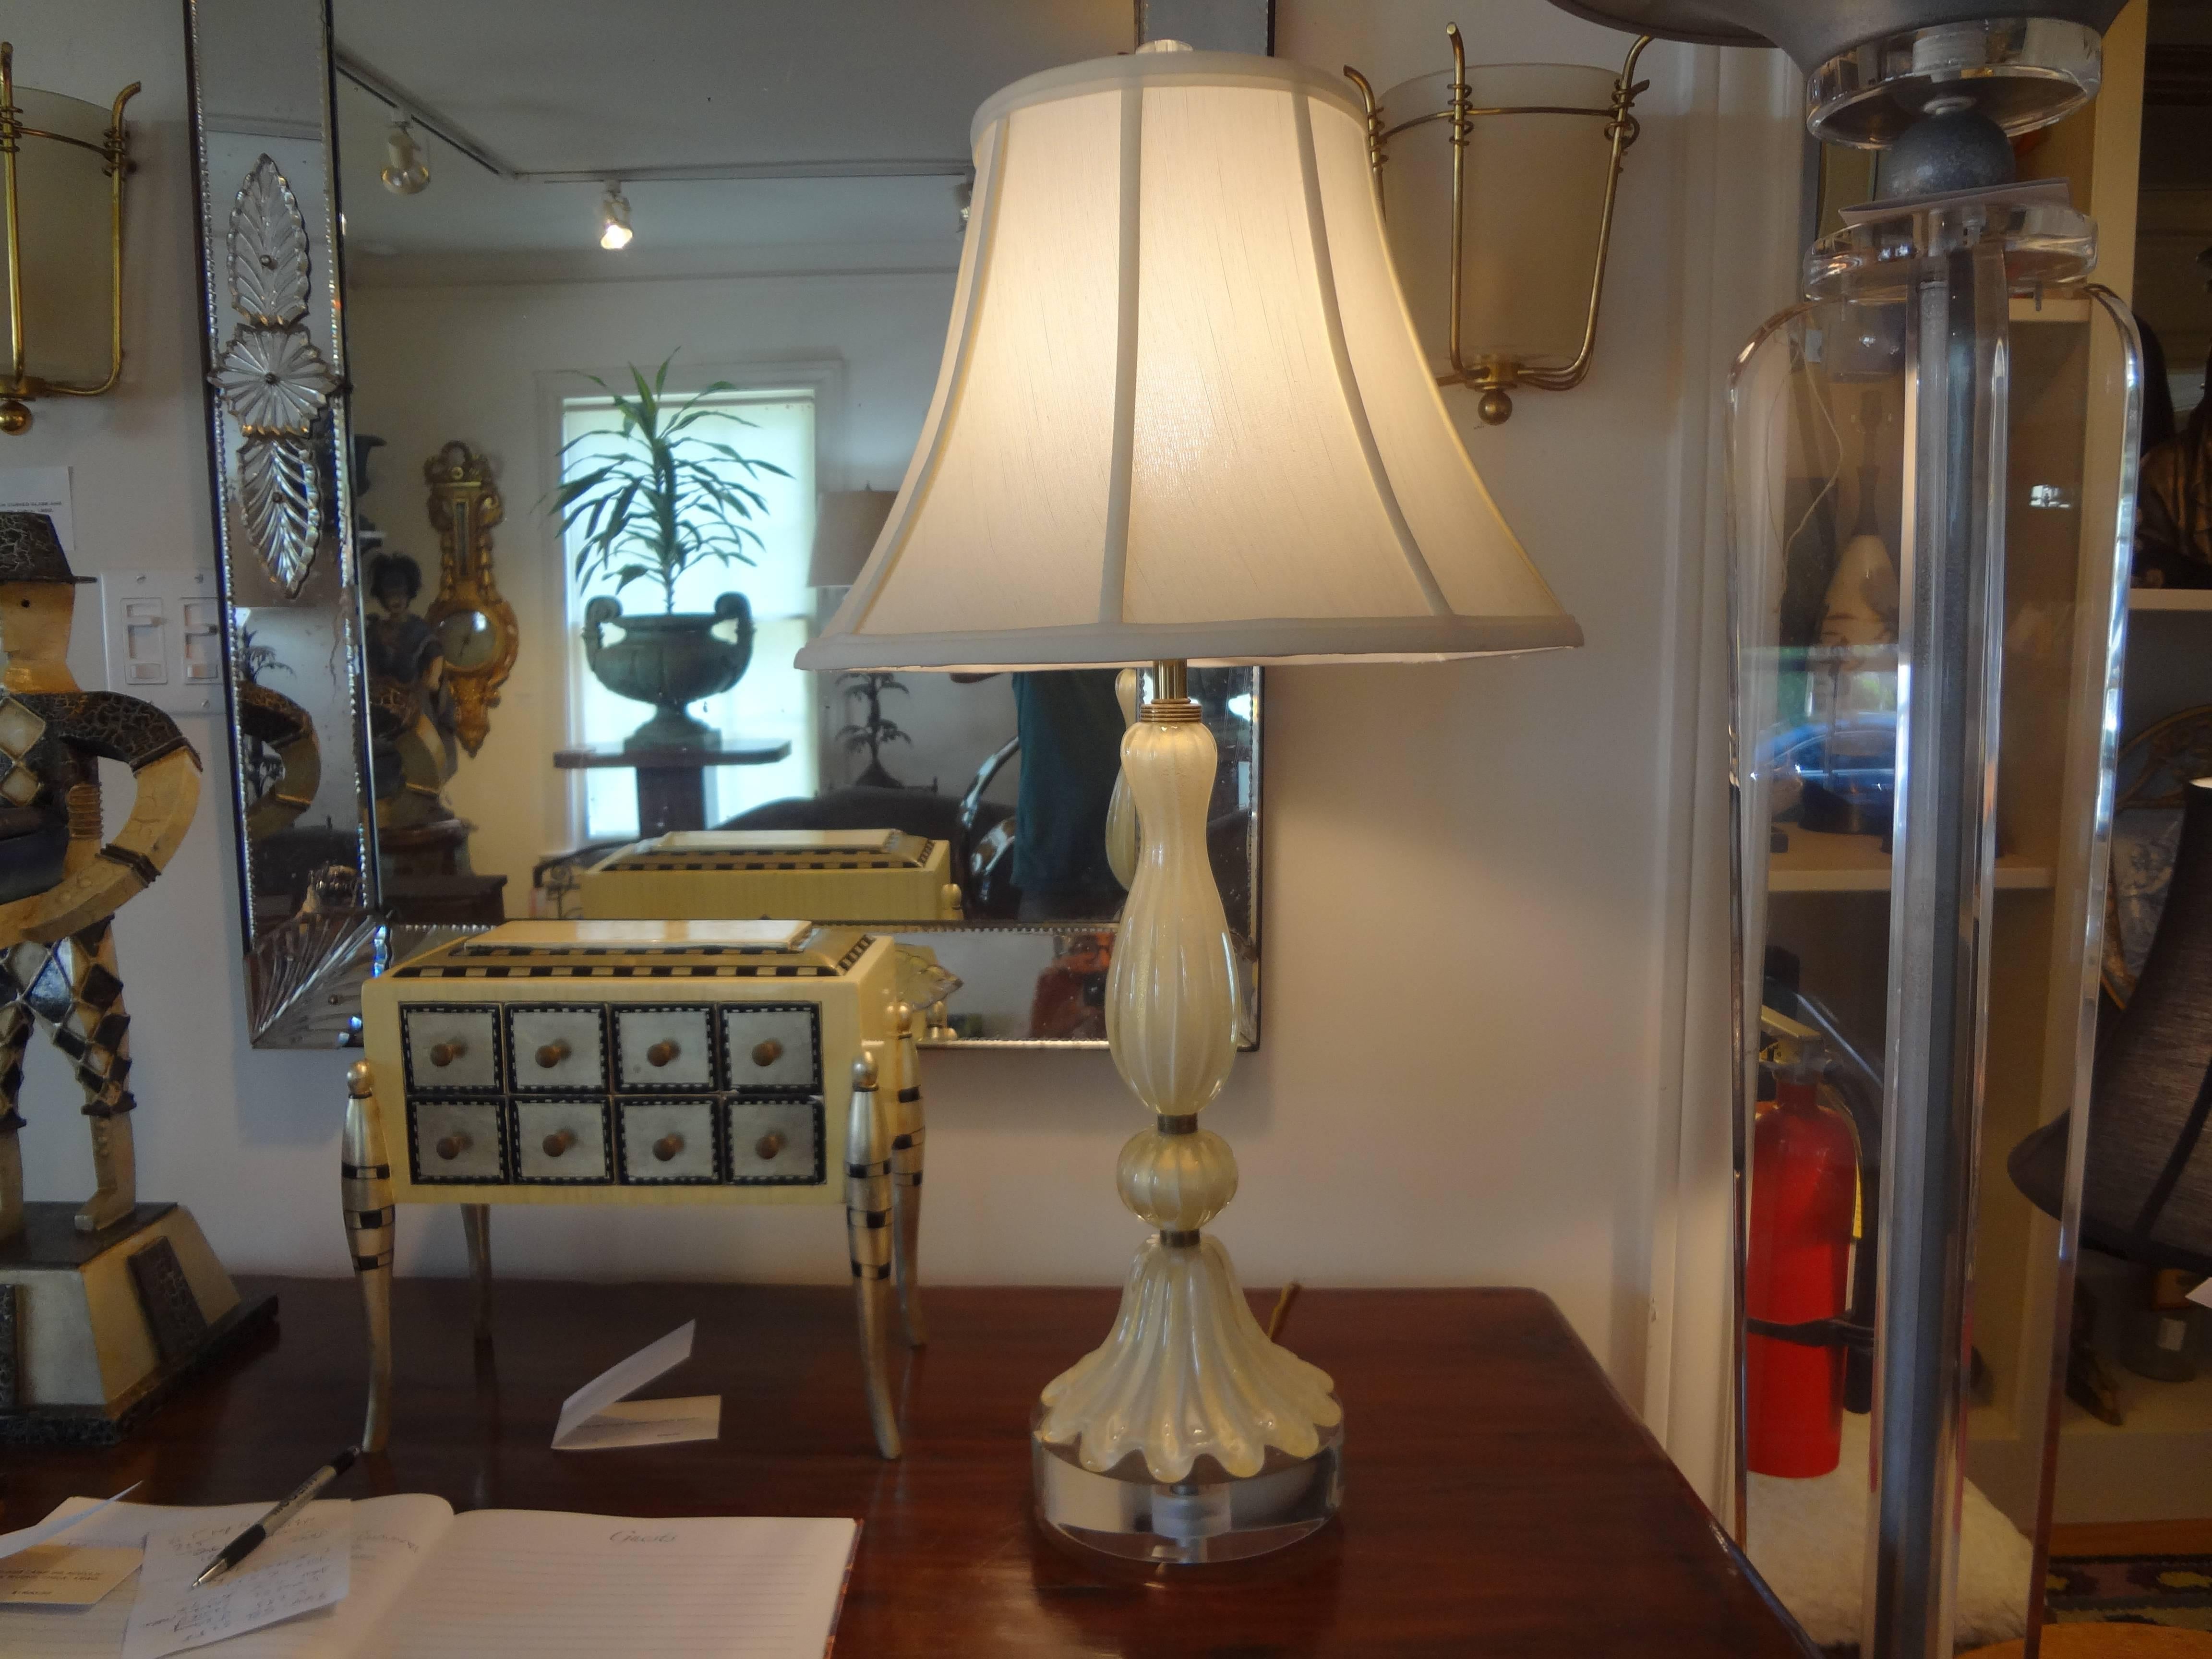 Lampe en verre de Murano attribuée à Barovier.
Lampe vintage italienne en verre de Murano sur base lucite ou acrylique attribuée à Barovier. Cette lampe en verre vénitien est un verre de couleur crème infusé d'or avec des accents de laiton. Notre